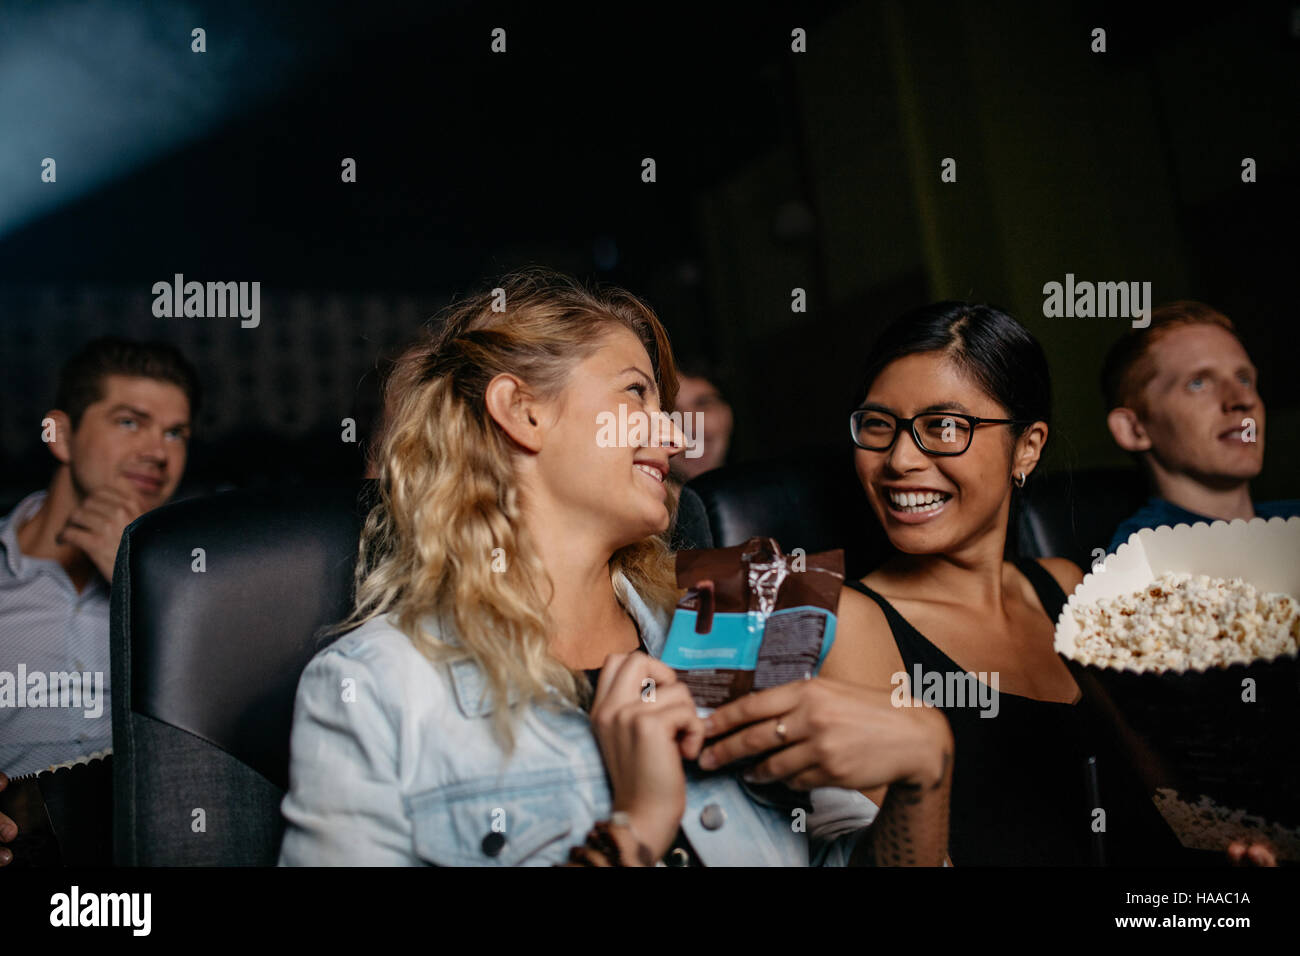 Zwei junge Frau im Chat lächelnd beim Sitzen im Kino. Gruppe von Menschen Film zusammen. Stockfoto